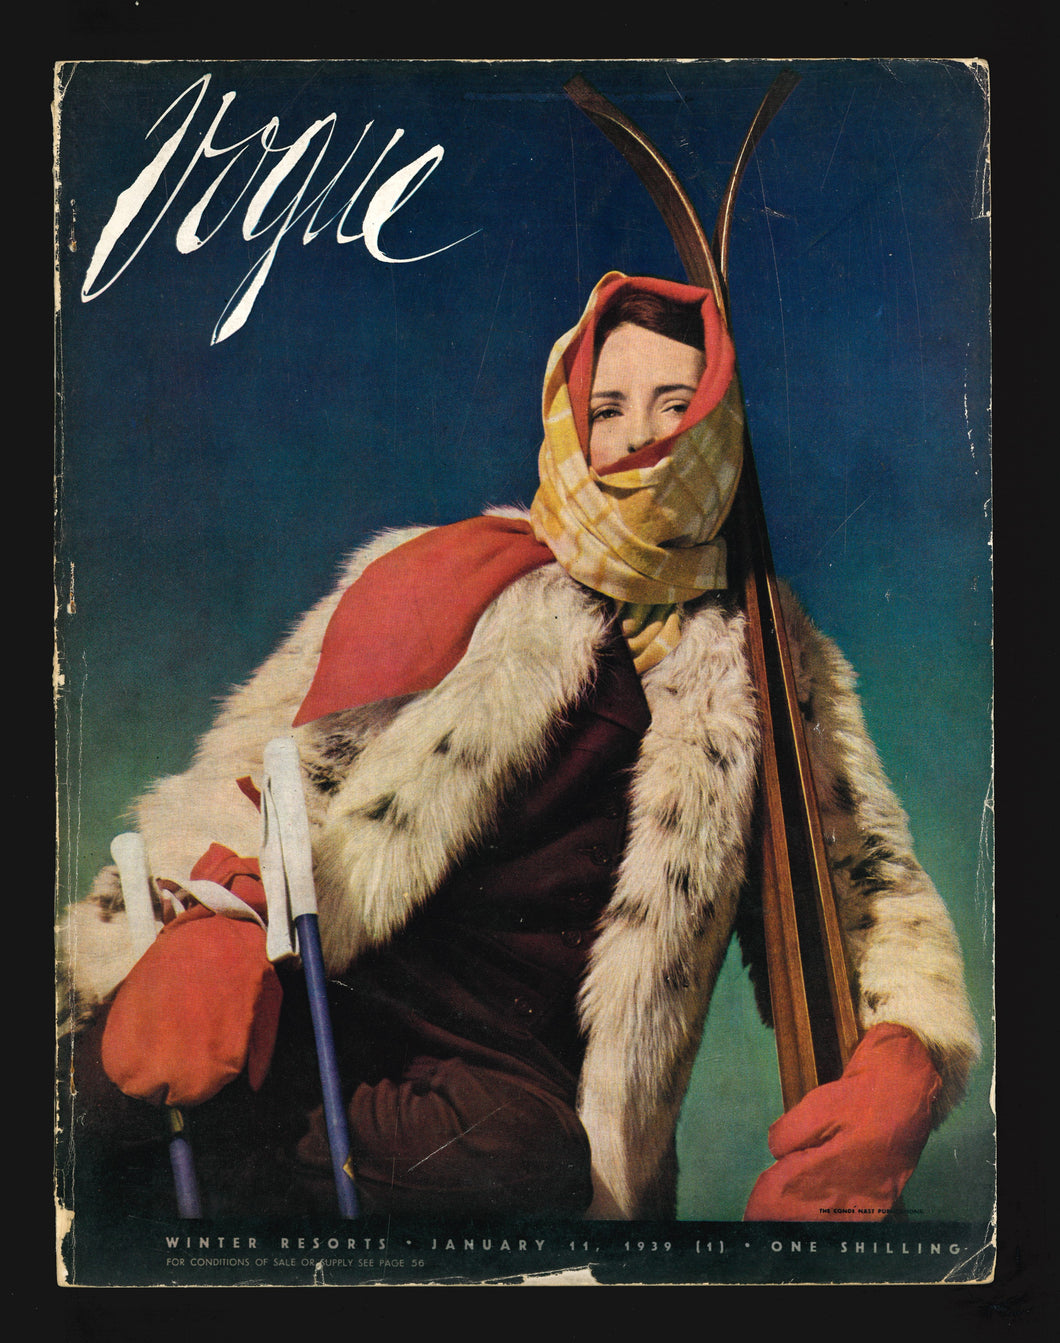 Vogue UK Jan 11 1939